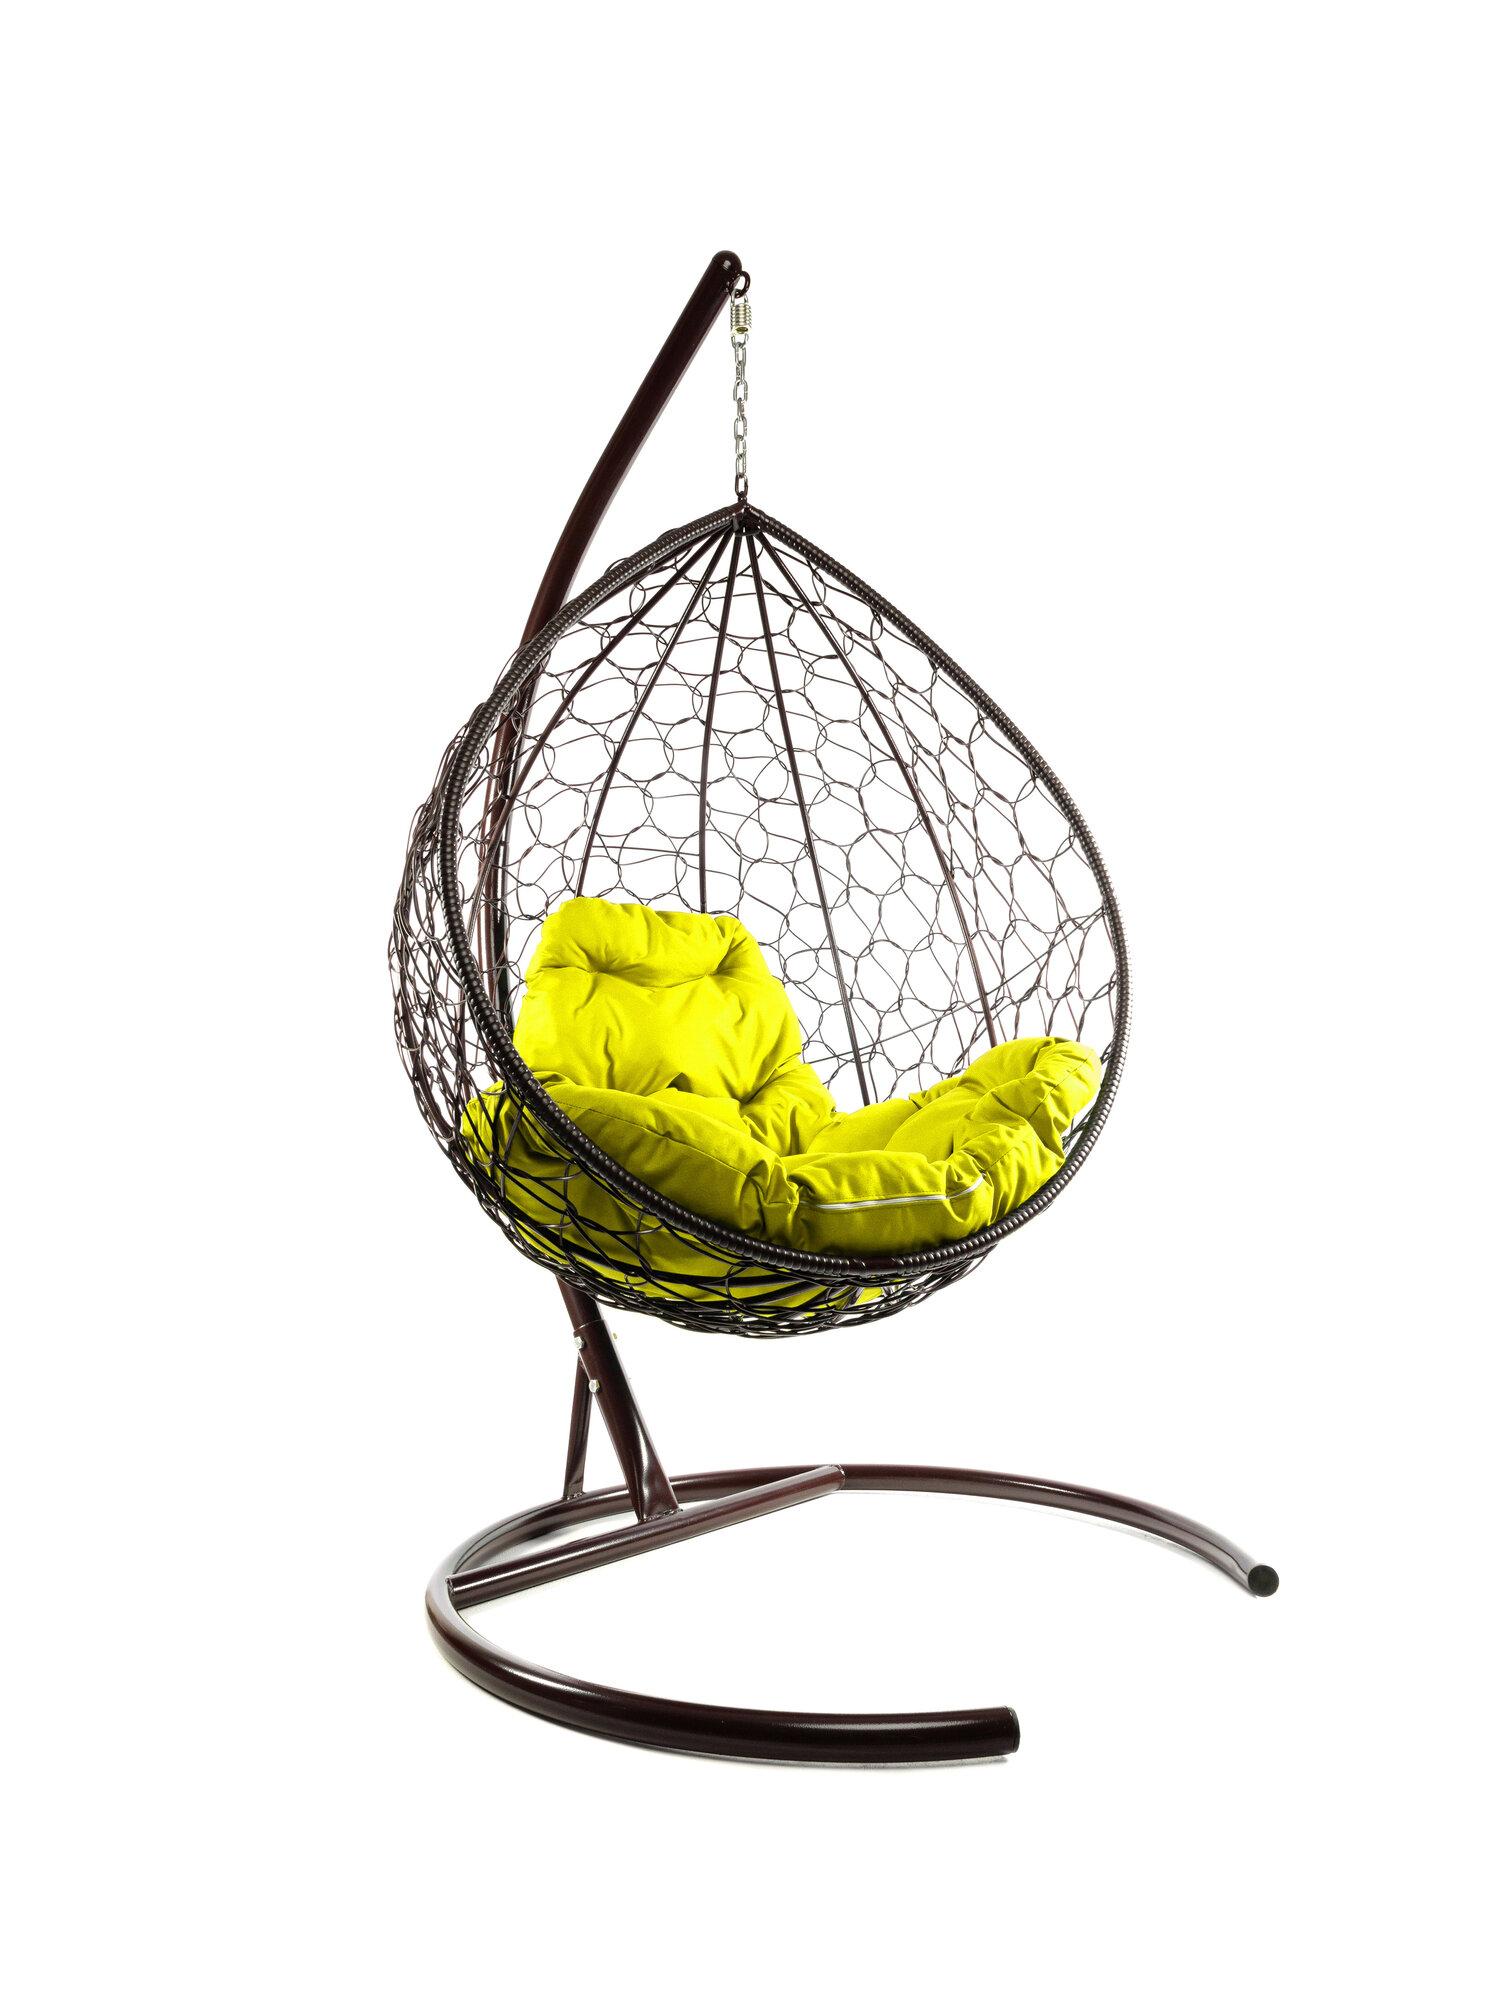 Подвесное кресло M-group капля с ротангом коричневое жёлтая подушка